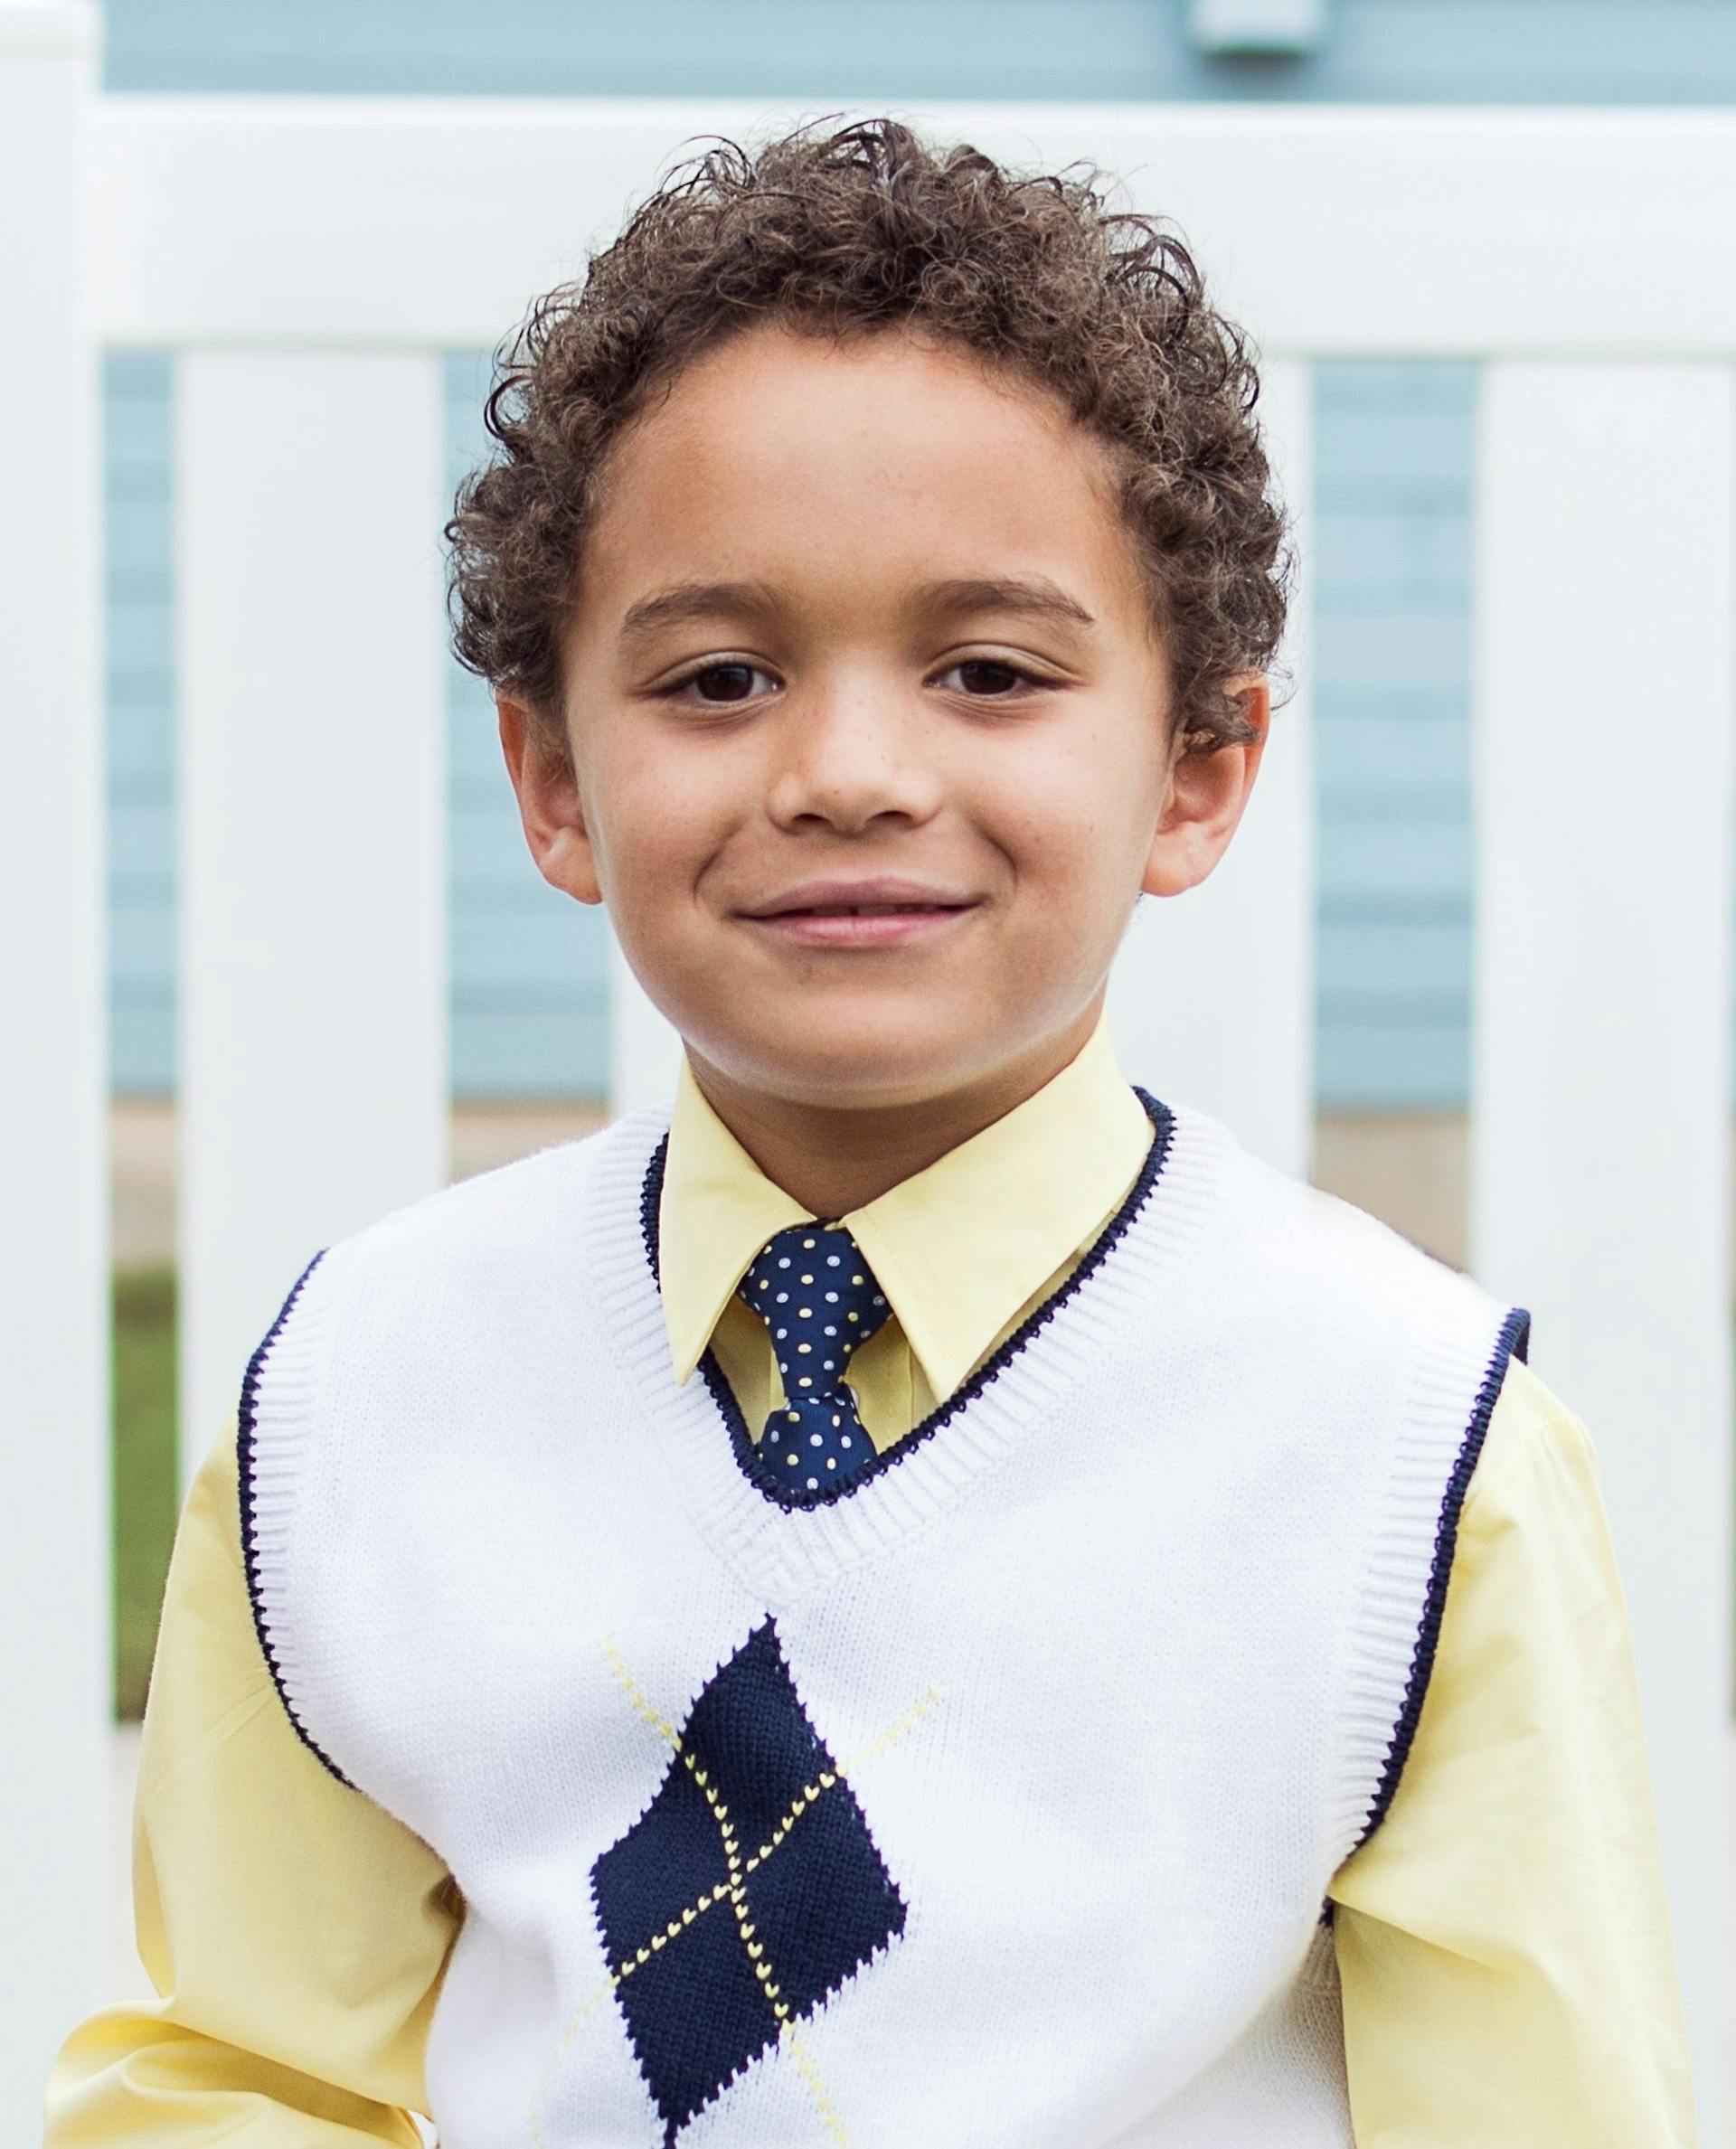 Jeune garçon souriant à l'appareil photo | Source : Pexels